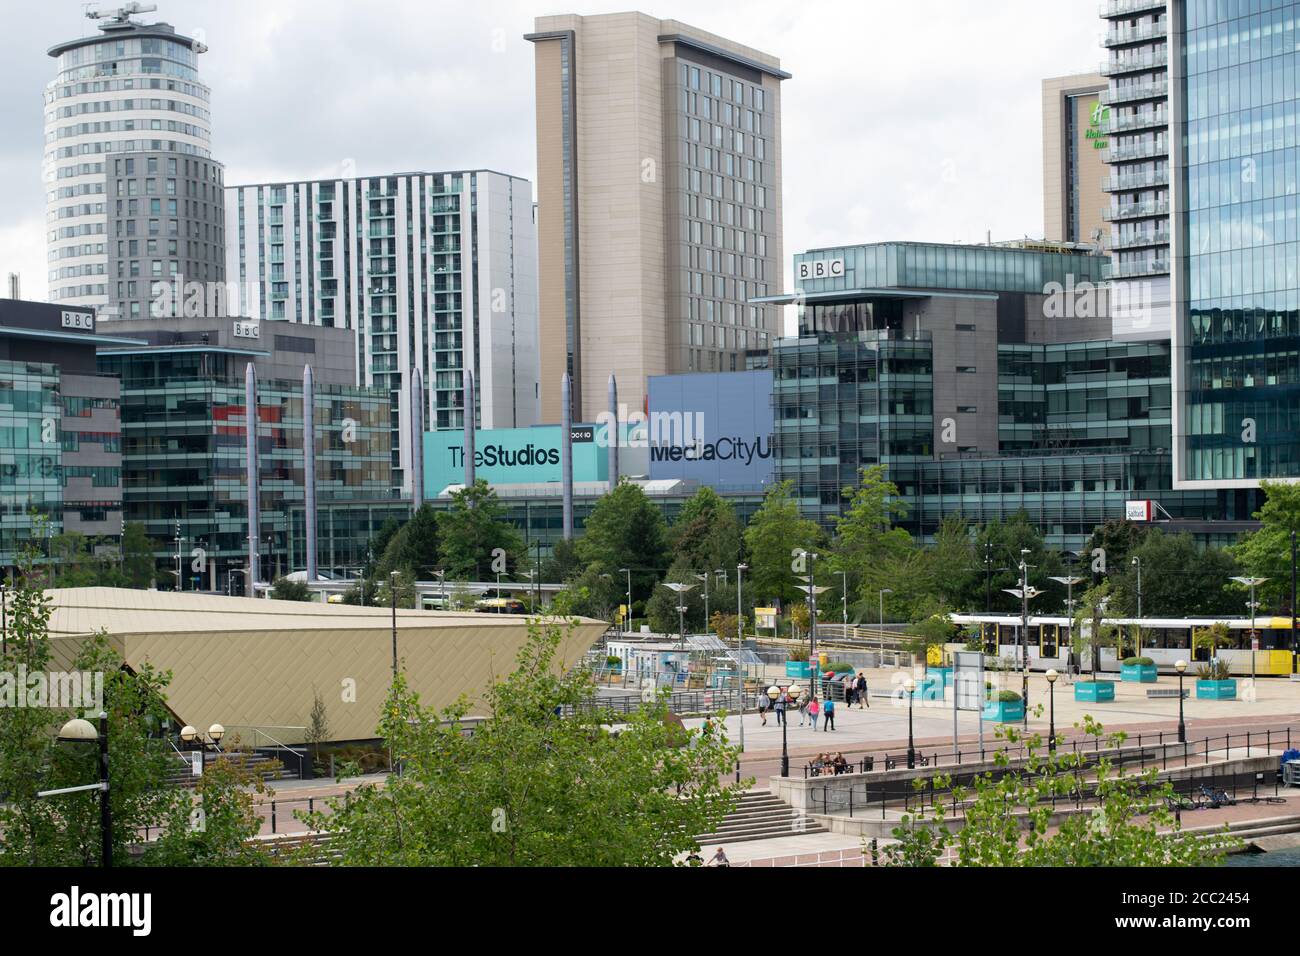 Media City, Salford Quays, Manchester, Royaume-Uni. Prise de vue aérienne avec BBC, Université de Salford et tramway Metrolink . Banque D'Images